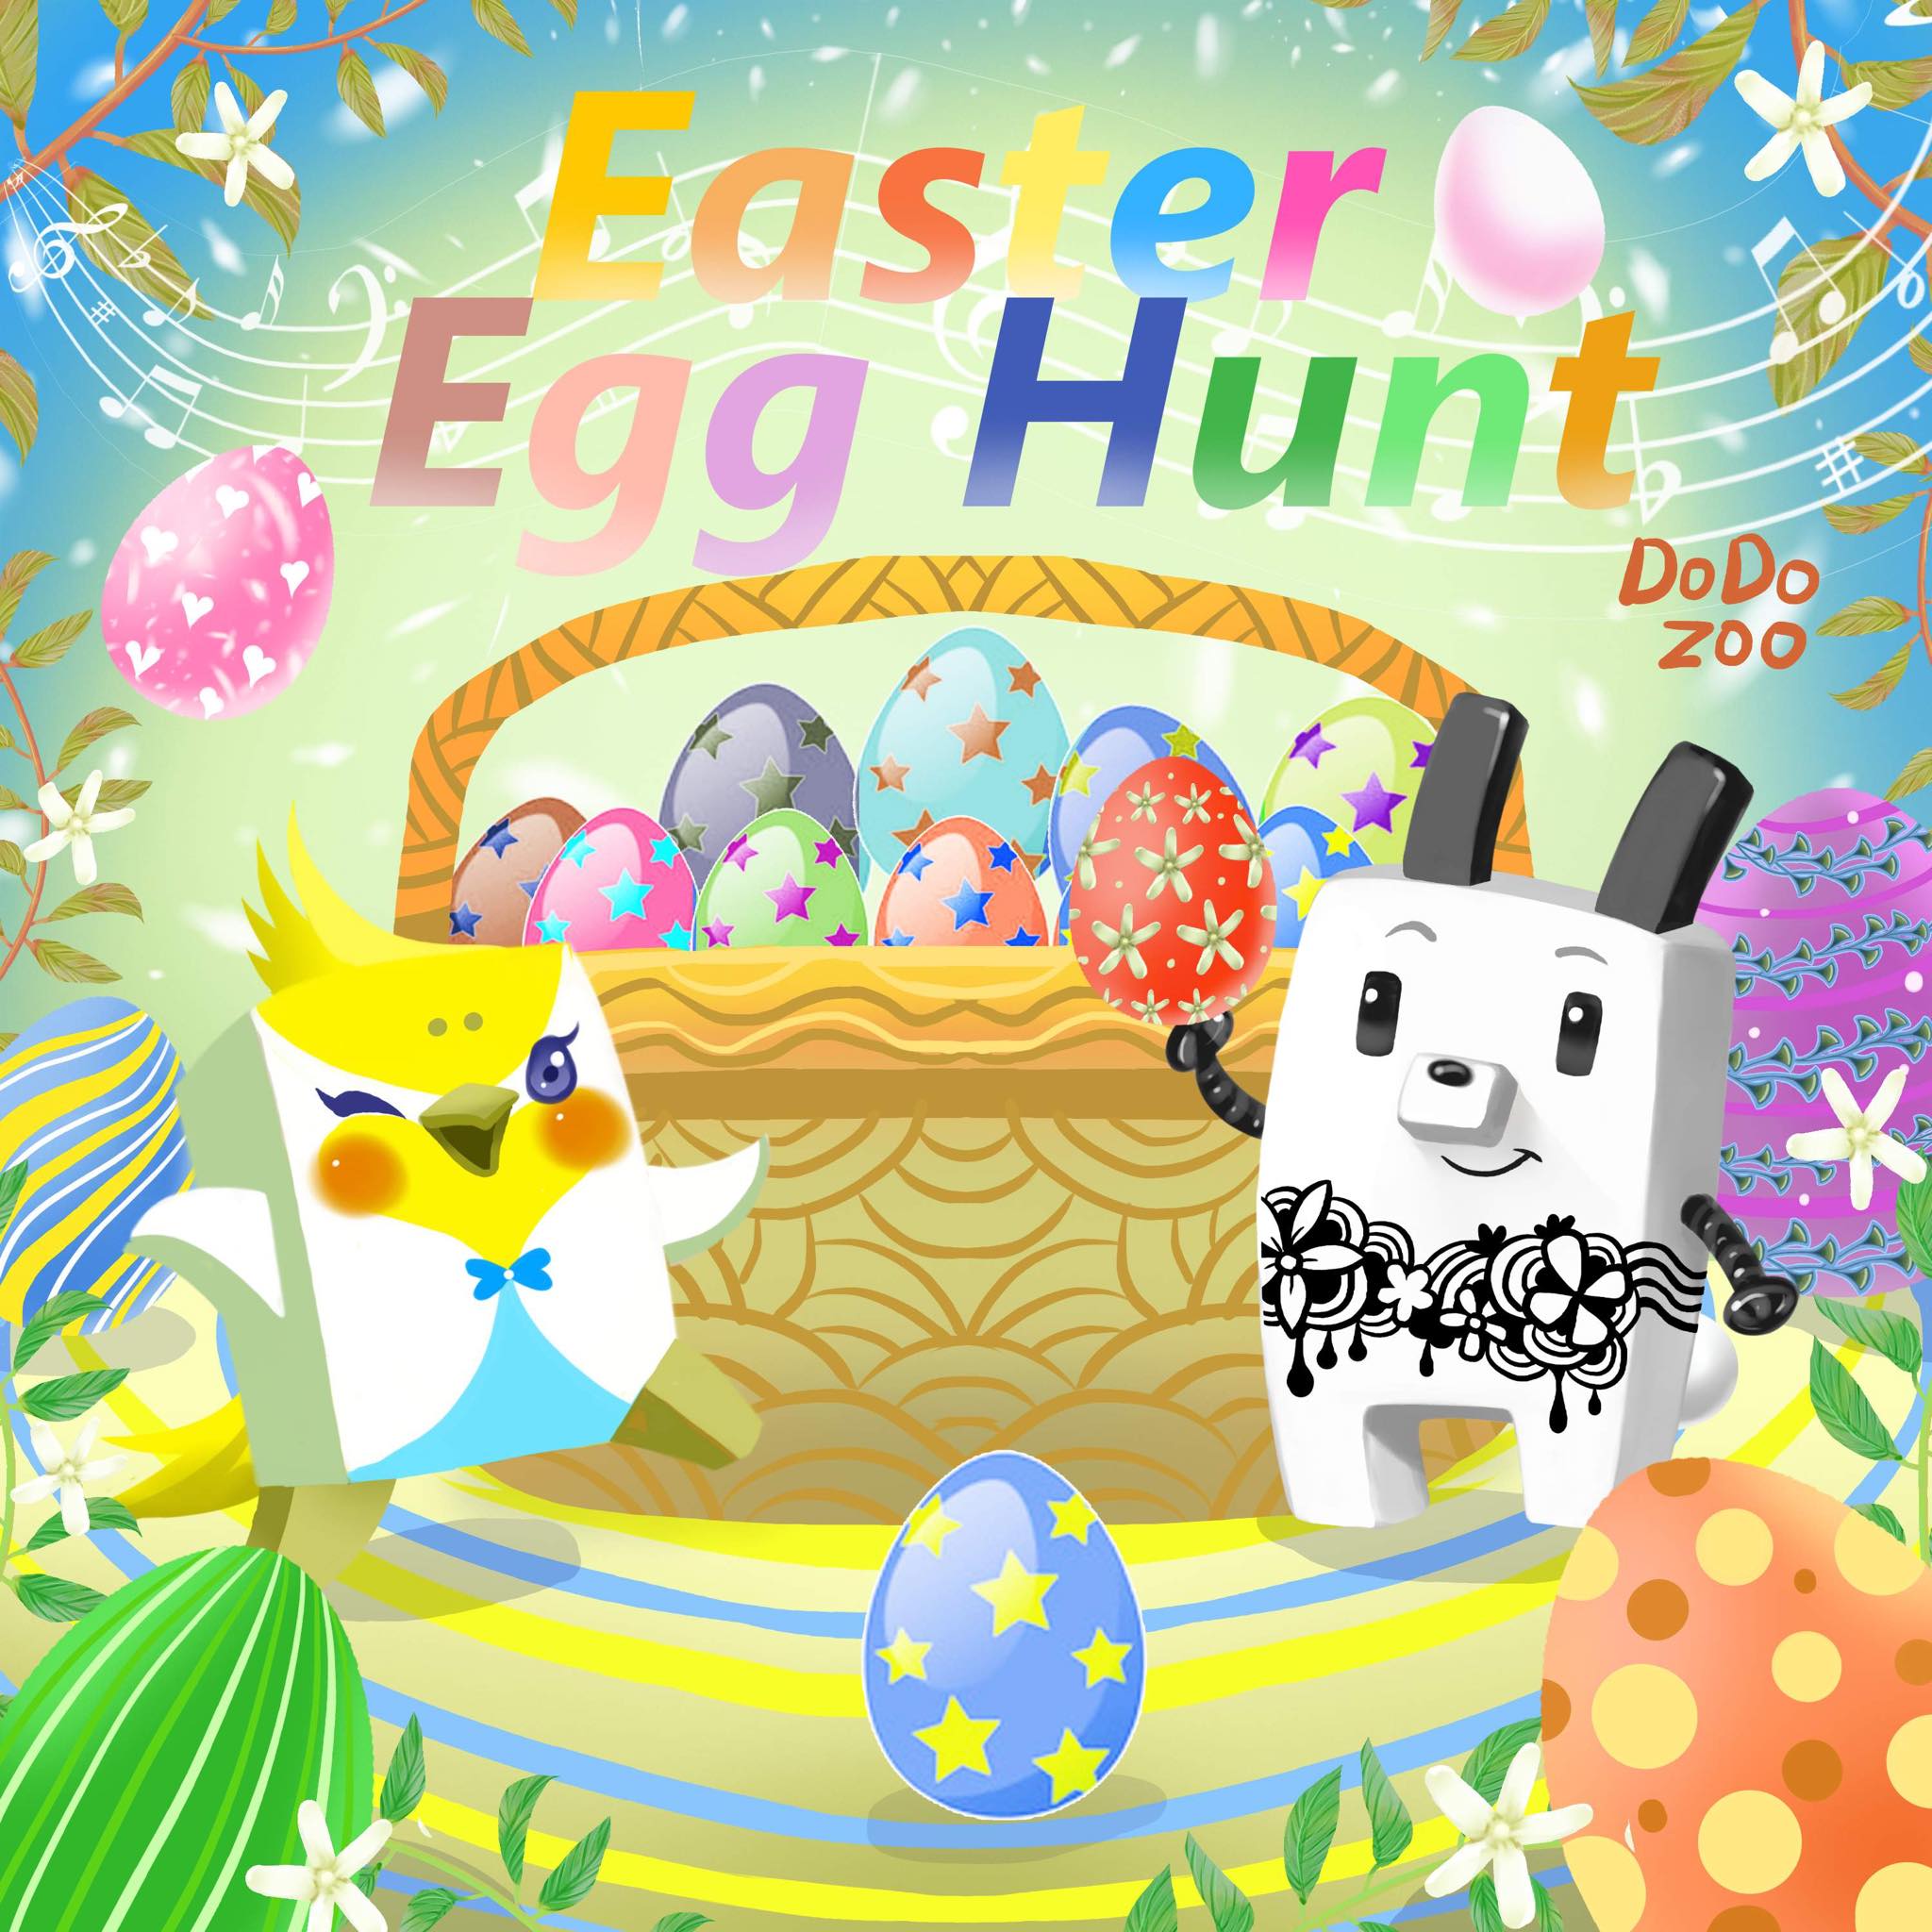 ★DODO-ZOO祝大家復活節蛋蛋快樂Easter Egg Hunt.jpg